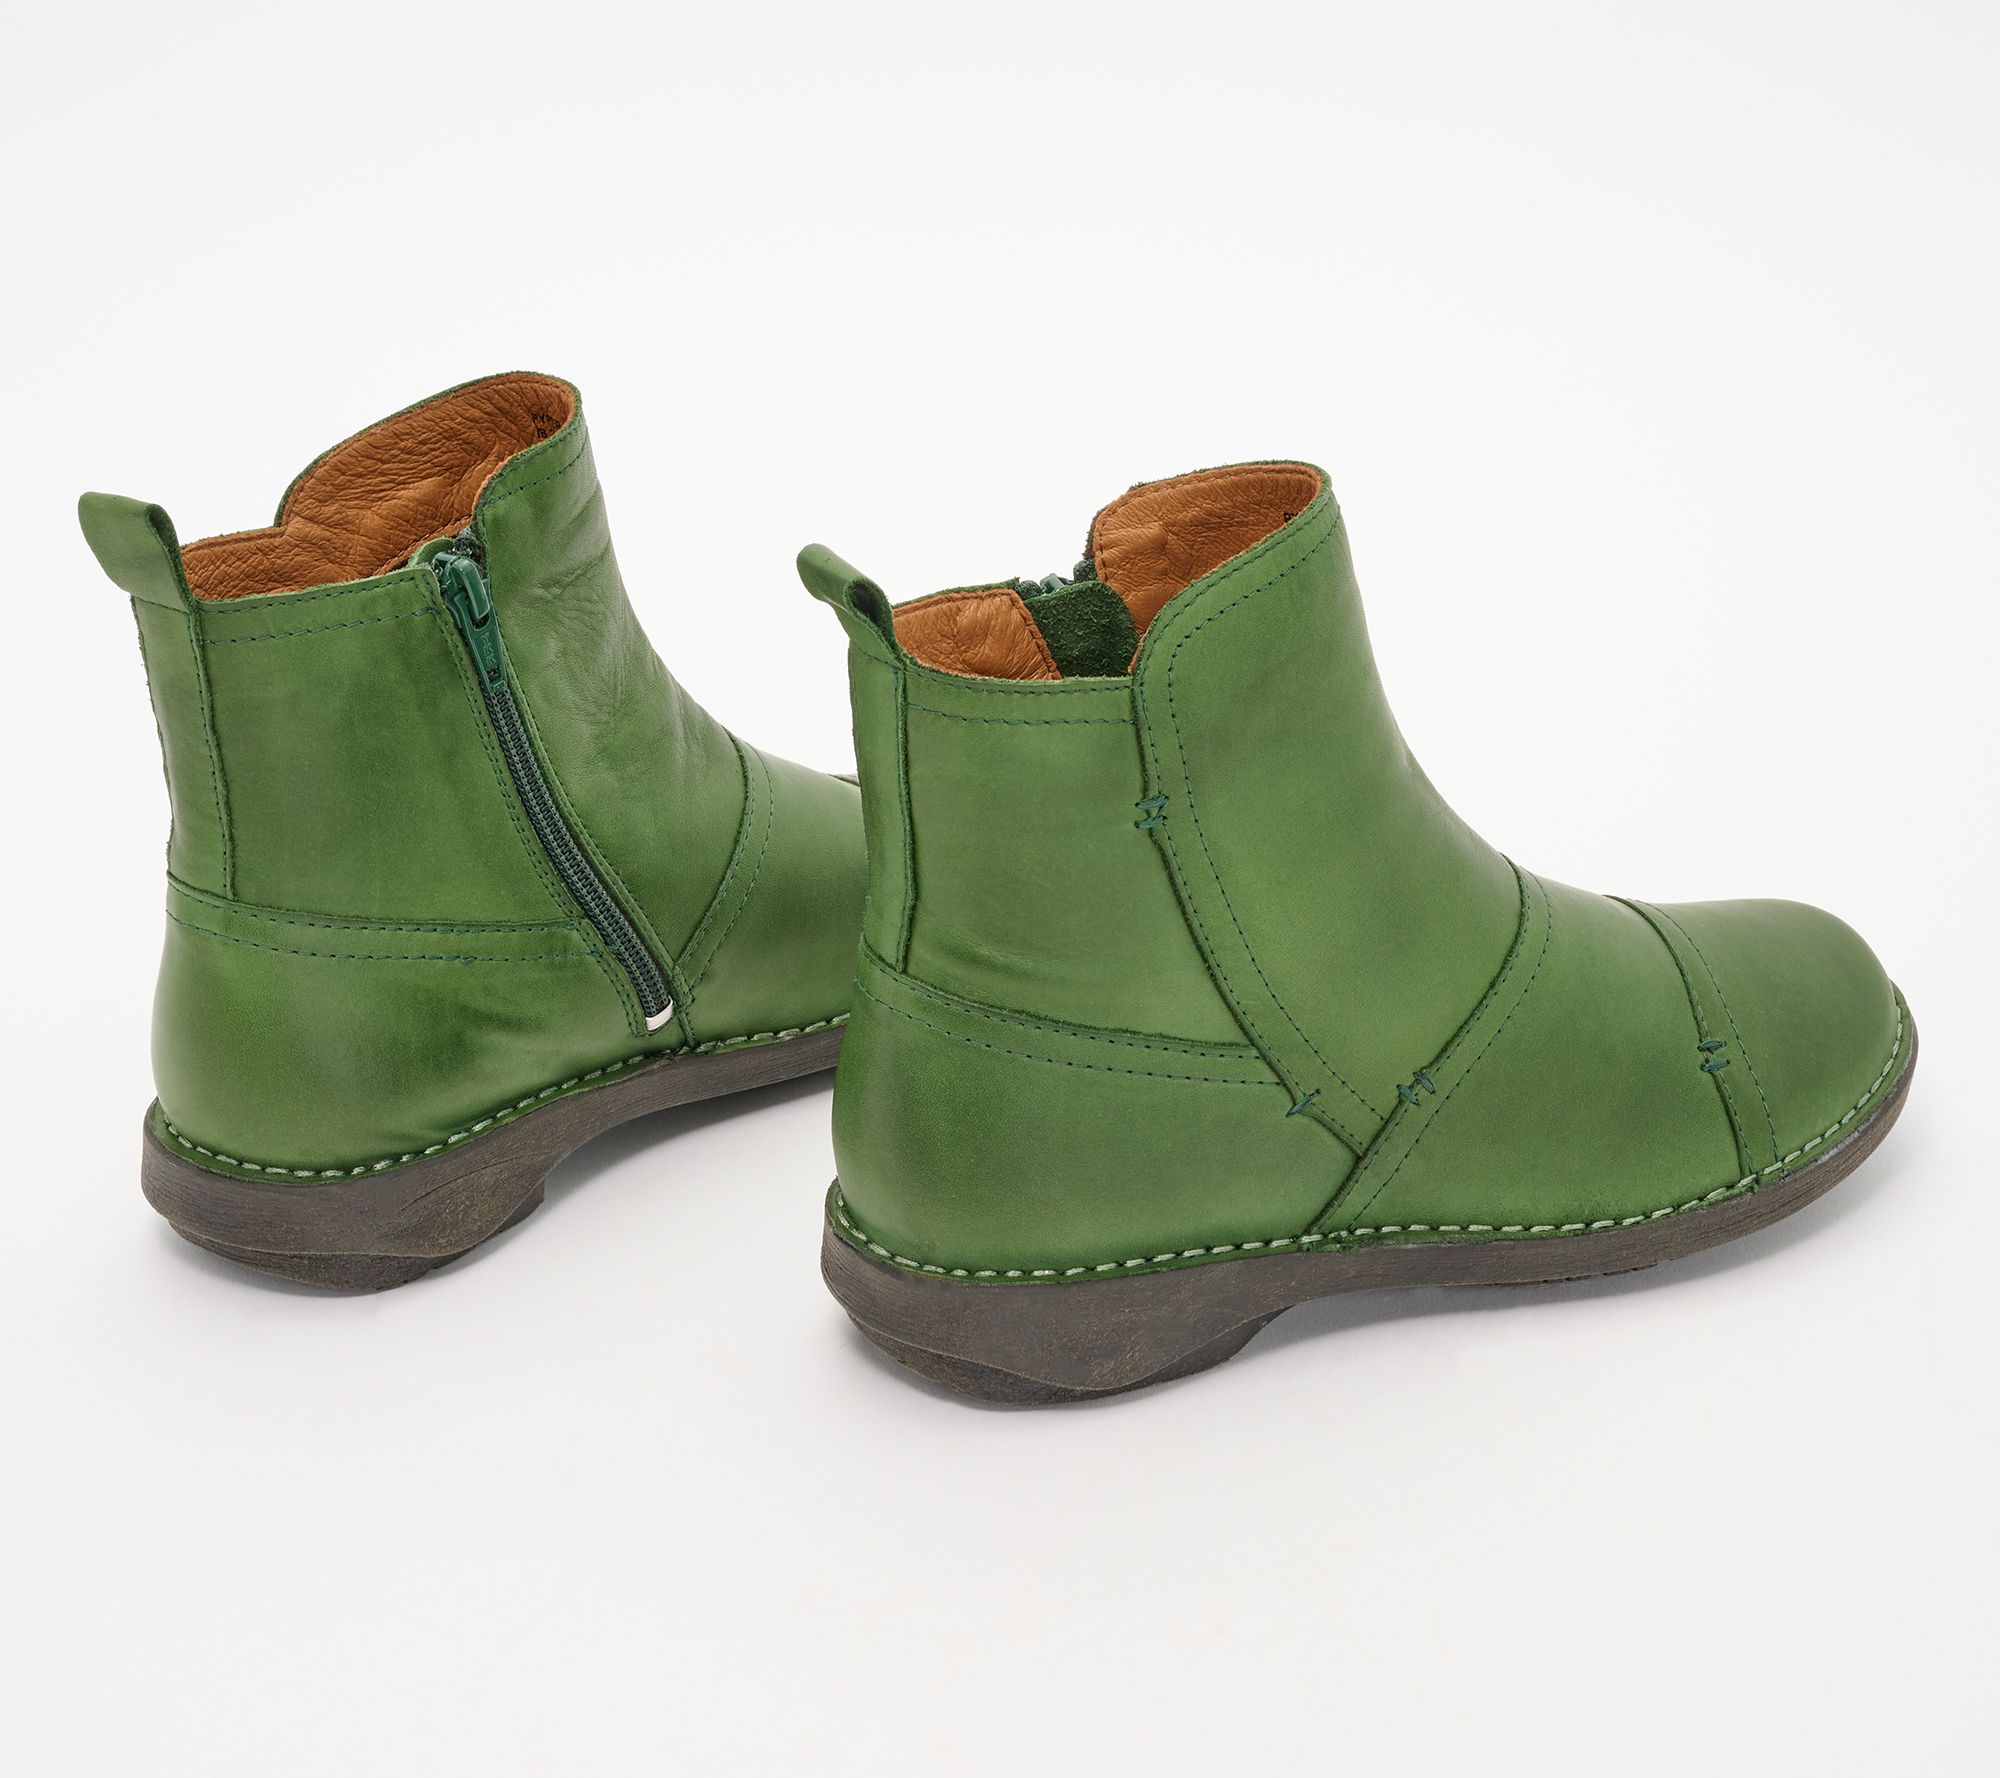 Miz Mooz Leather Ruched Ankle Boots - Pyper - QVC.com